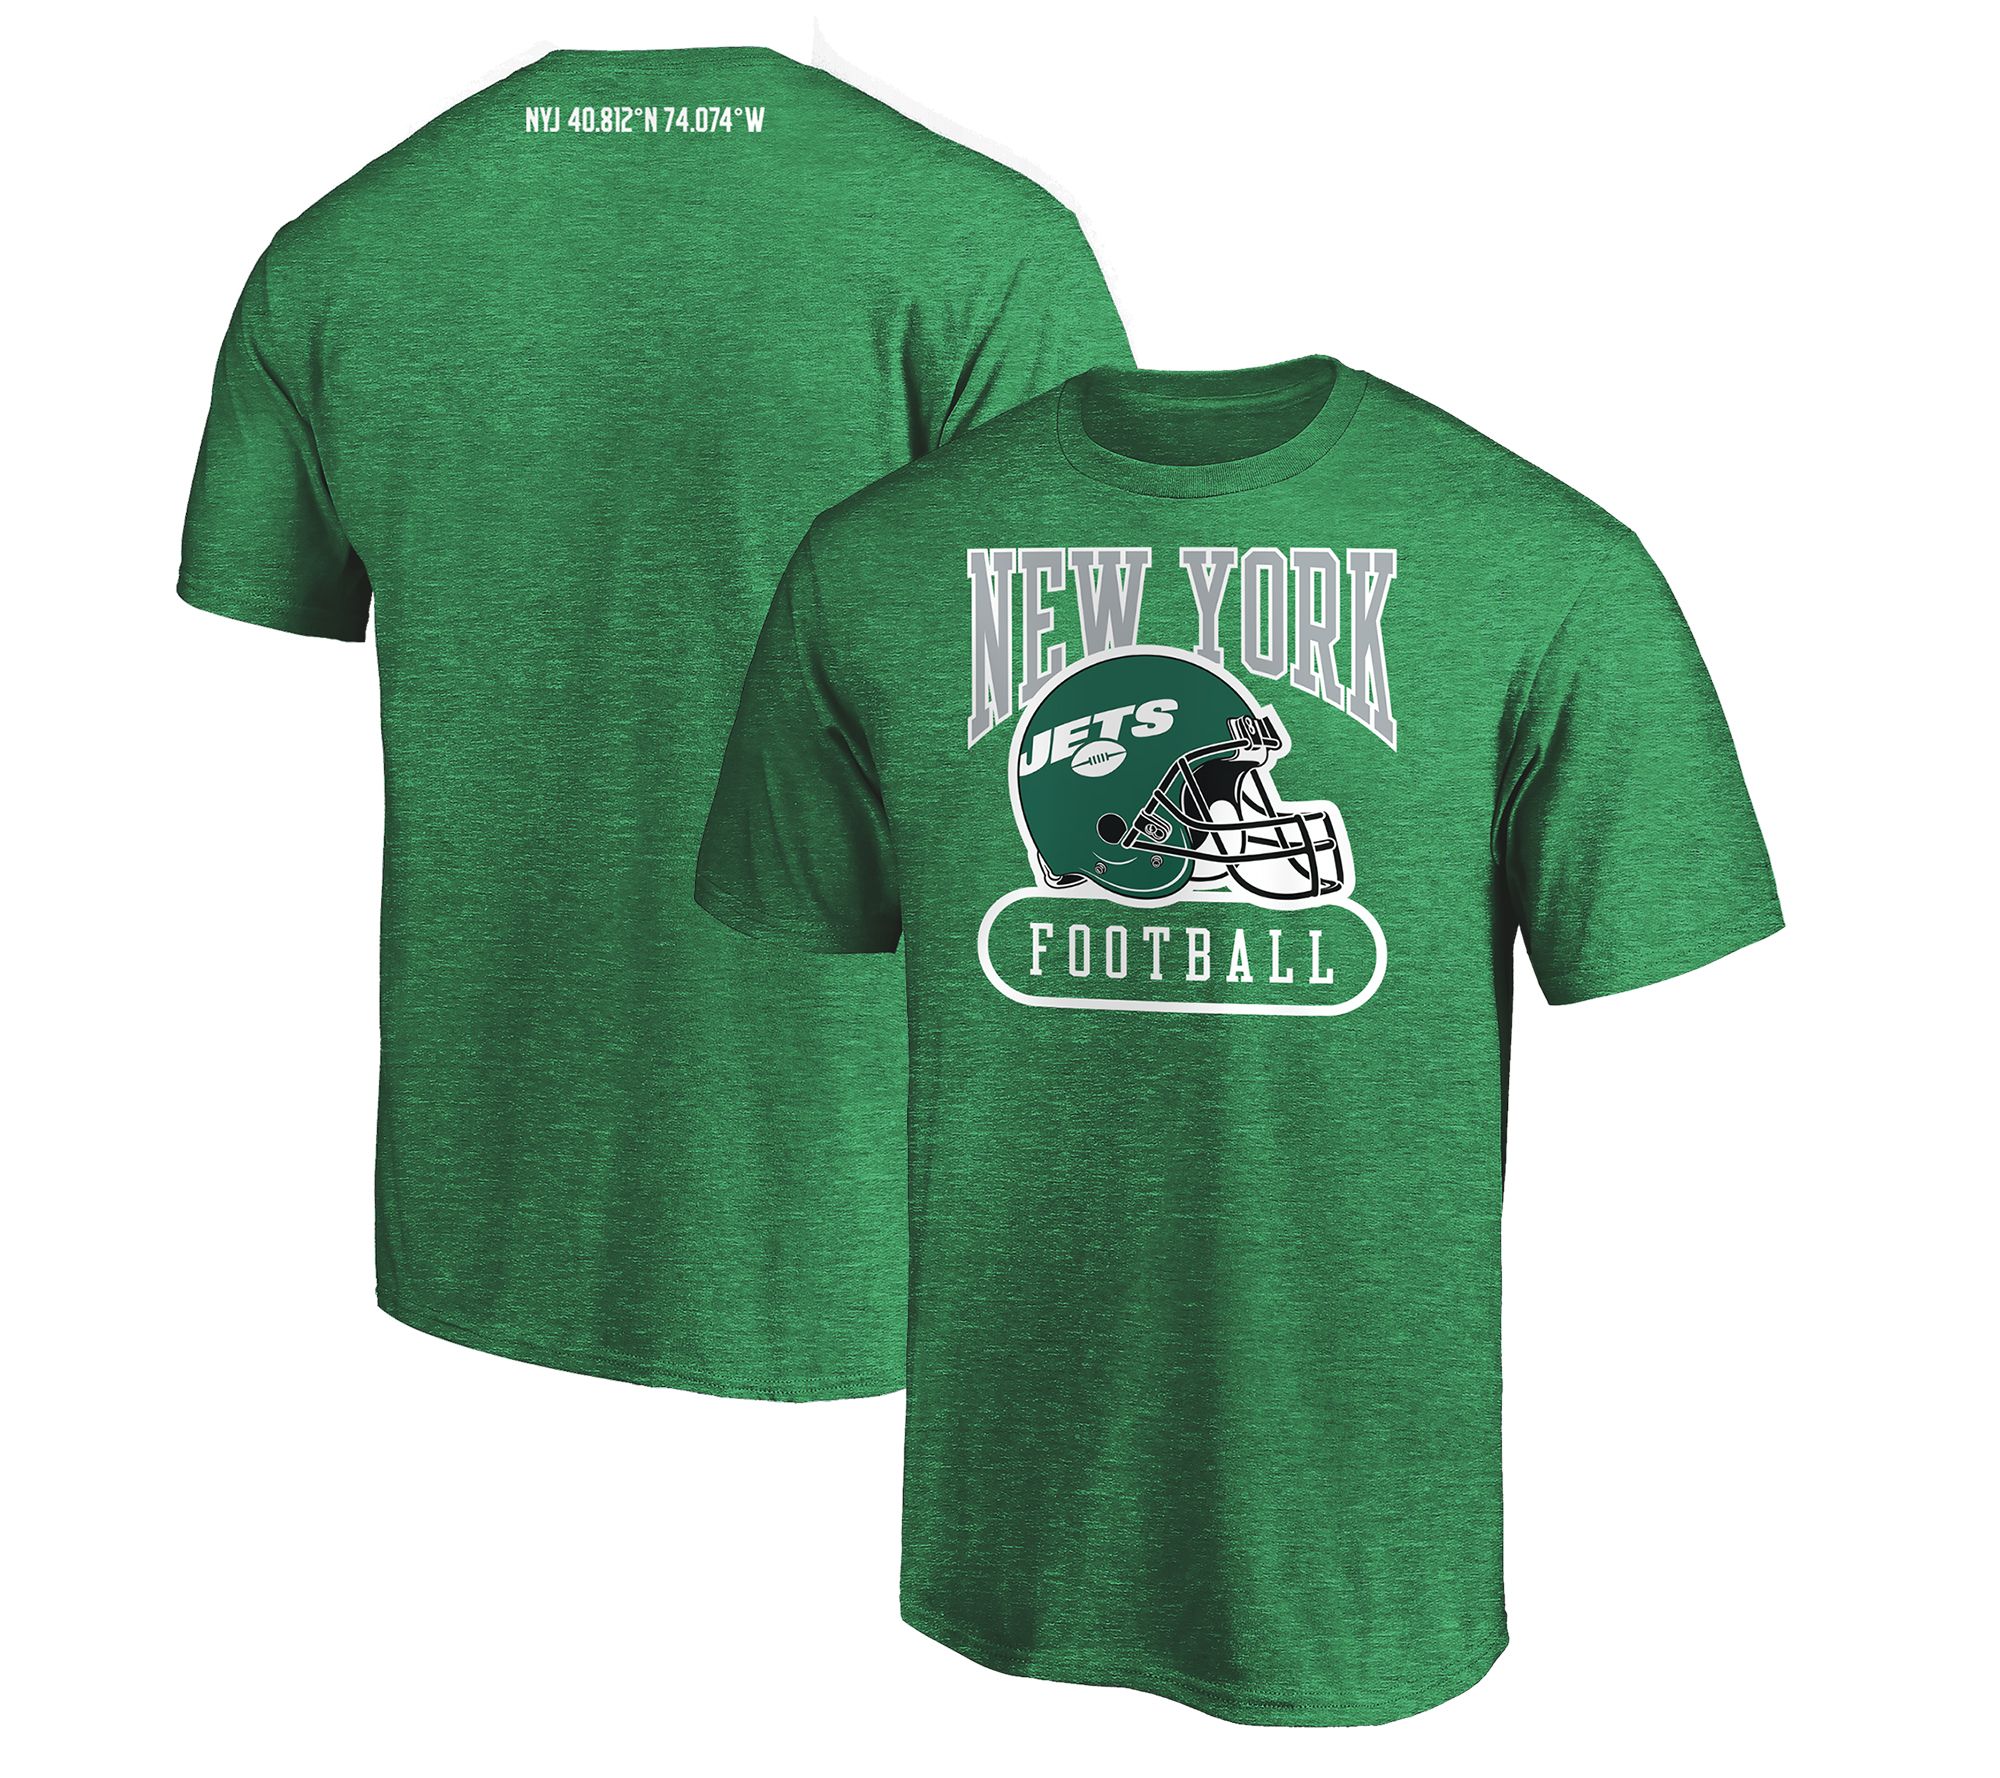 NFL Pro Club Tri Blend Short-Sleeve T-Shirt by Fanatics - QVC.com